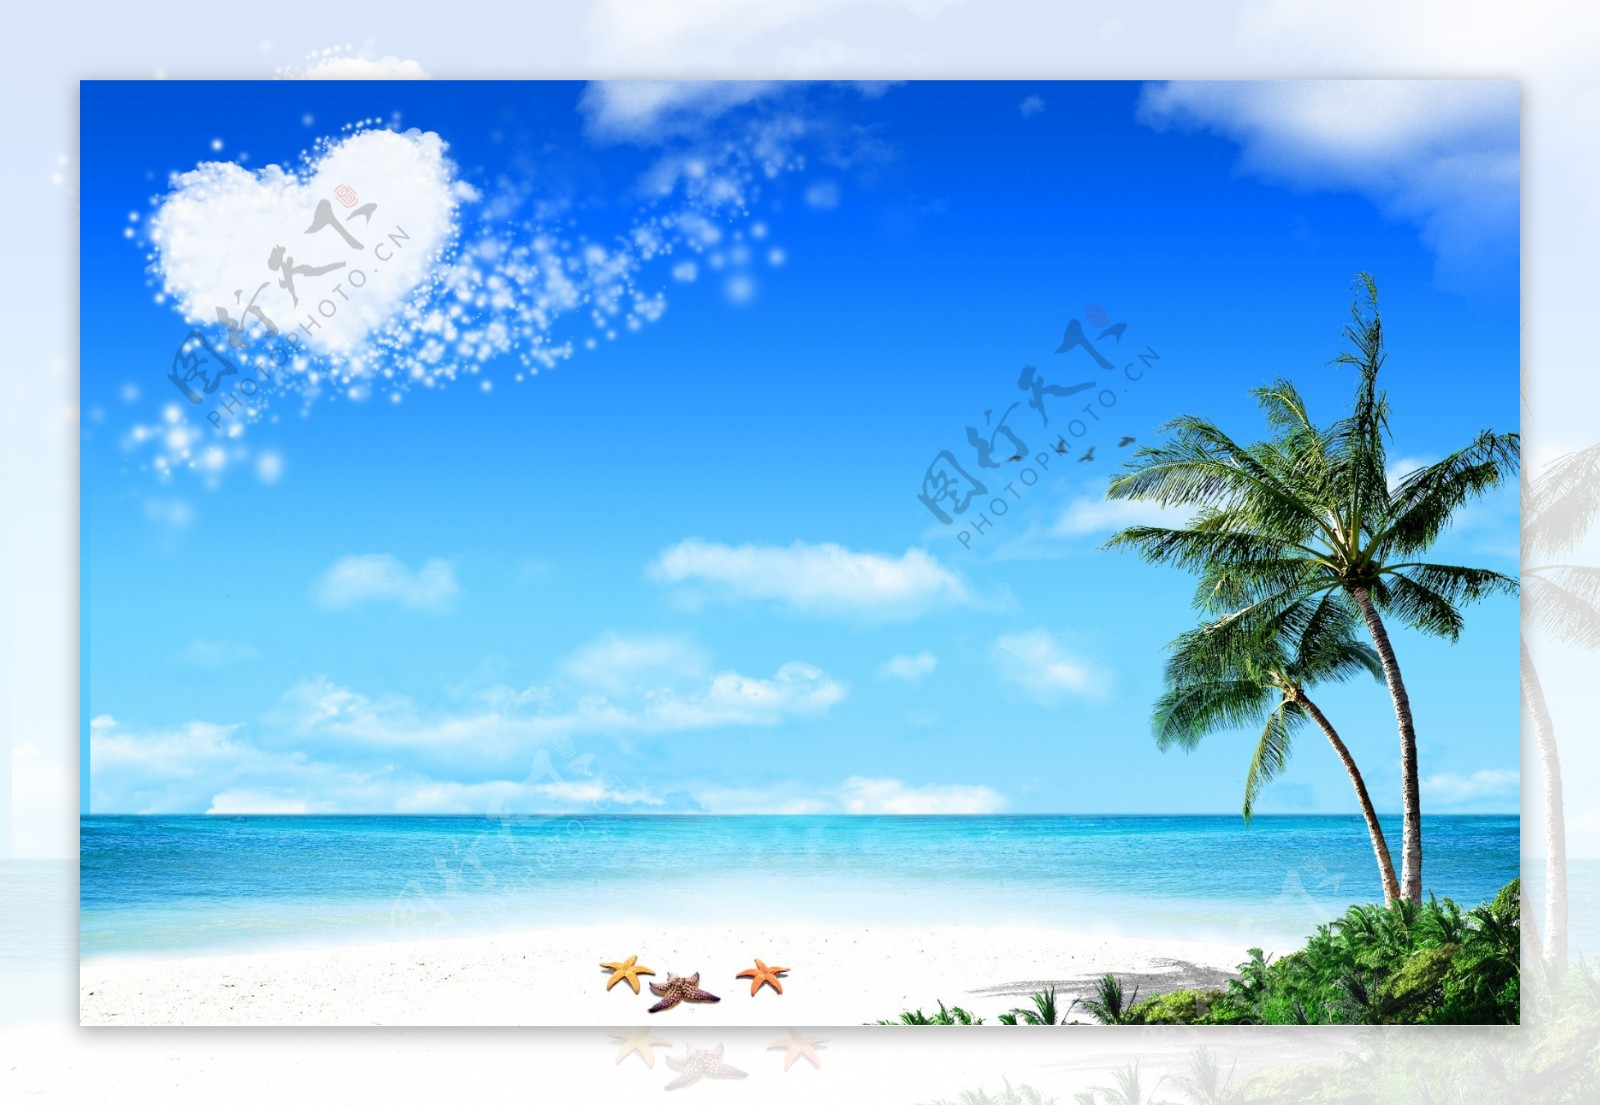 风景海滩蓝天白云图片